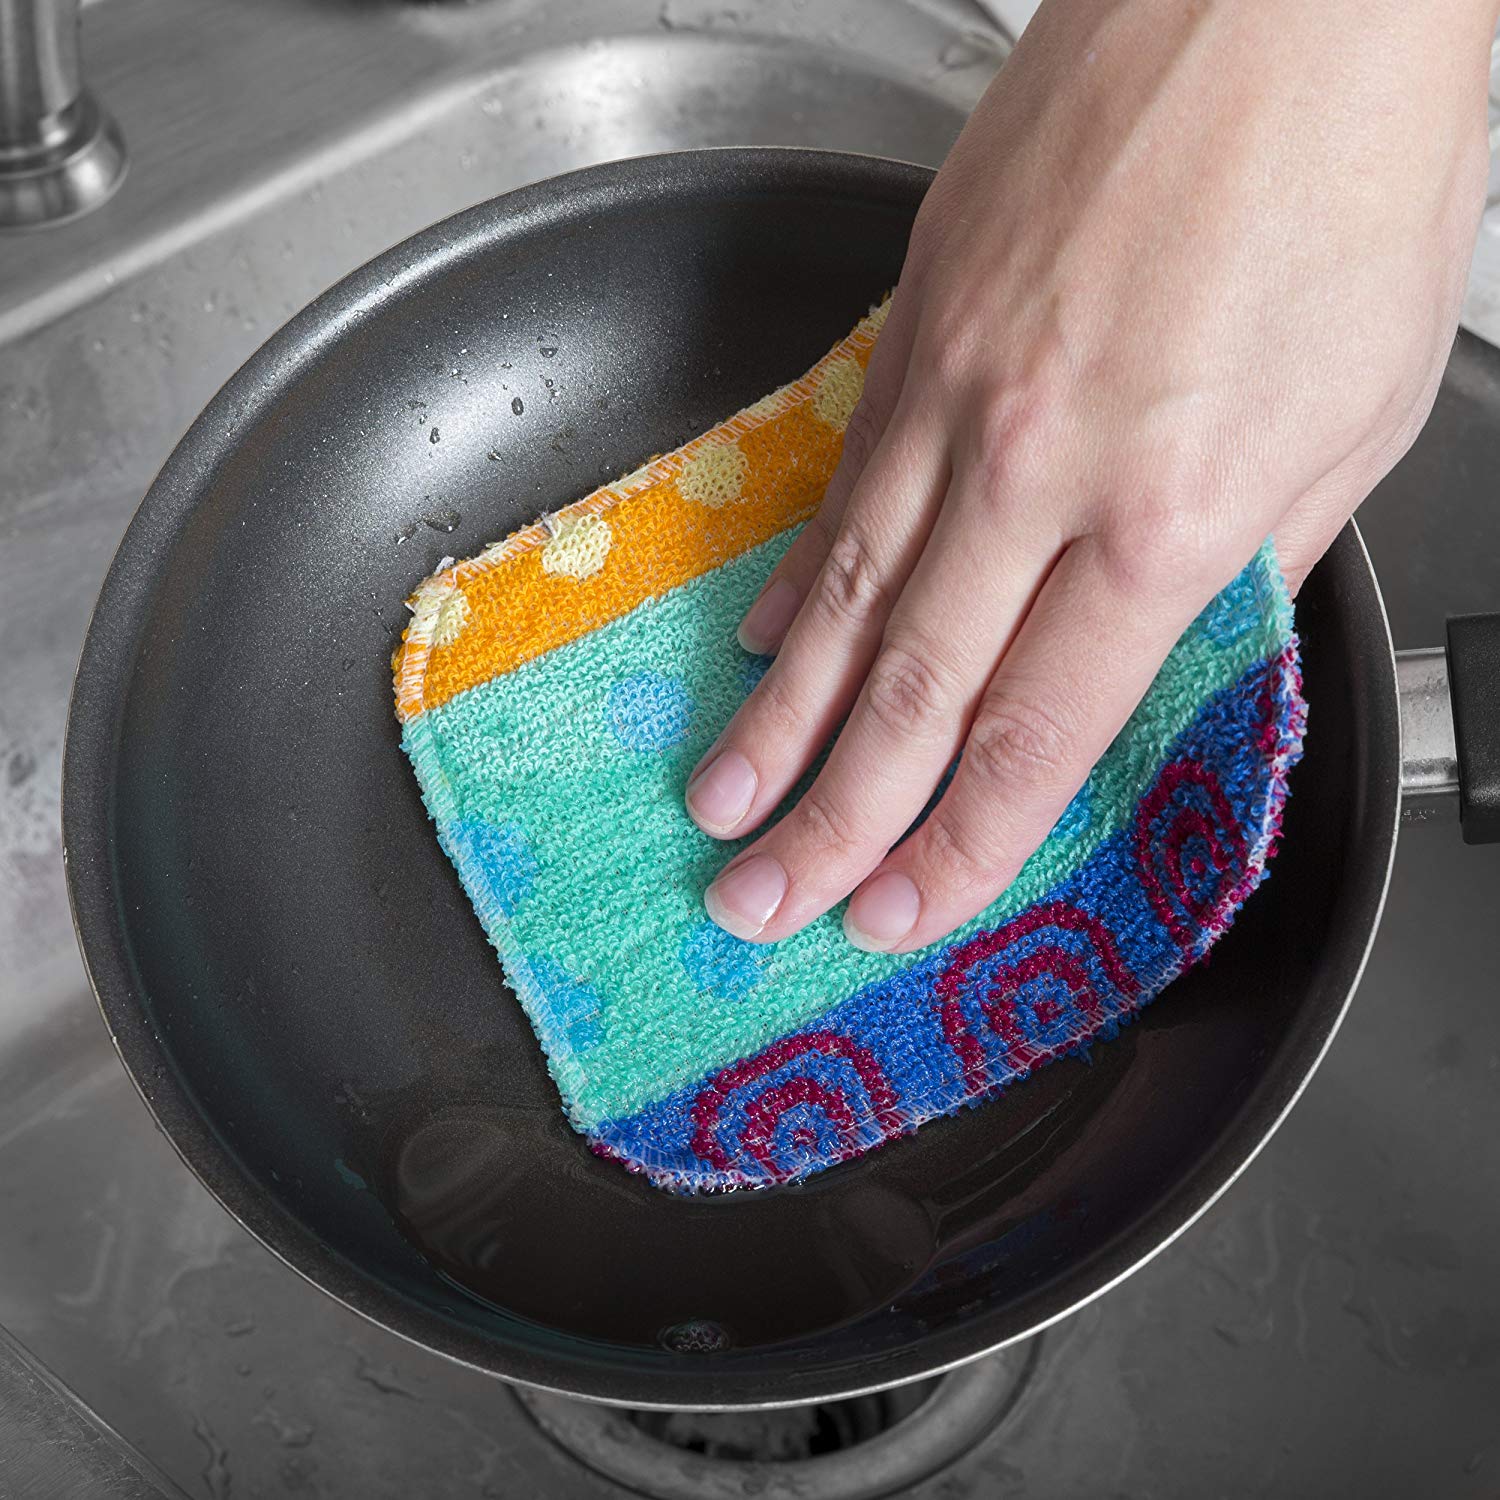 Paperless-Kitchen-Cleaning-Cloths-Dish-Scrubs-Review-Closetsamples-2.jpg